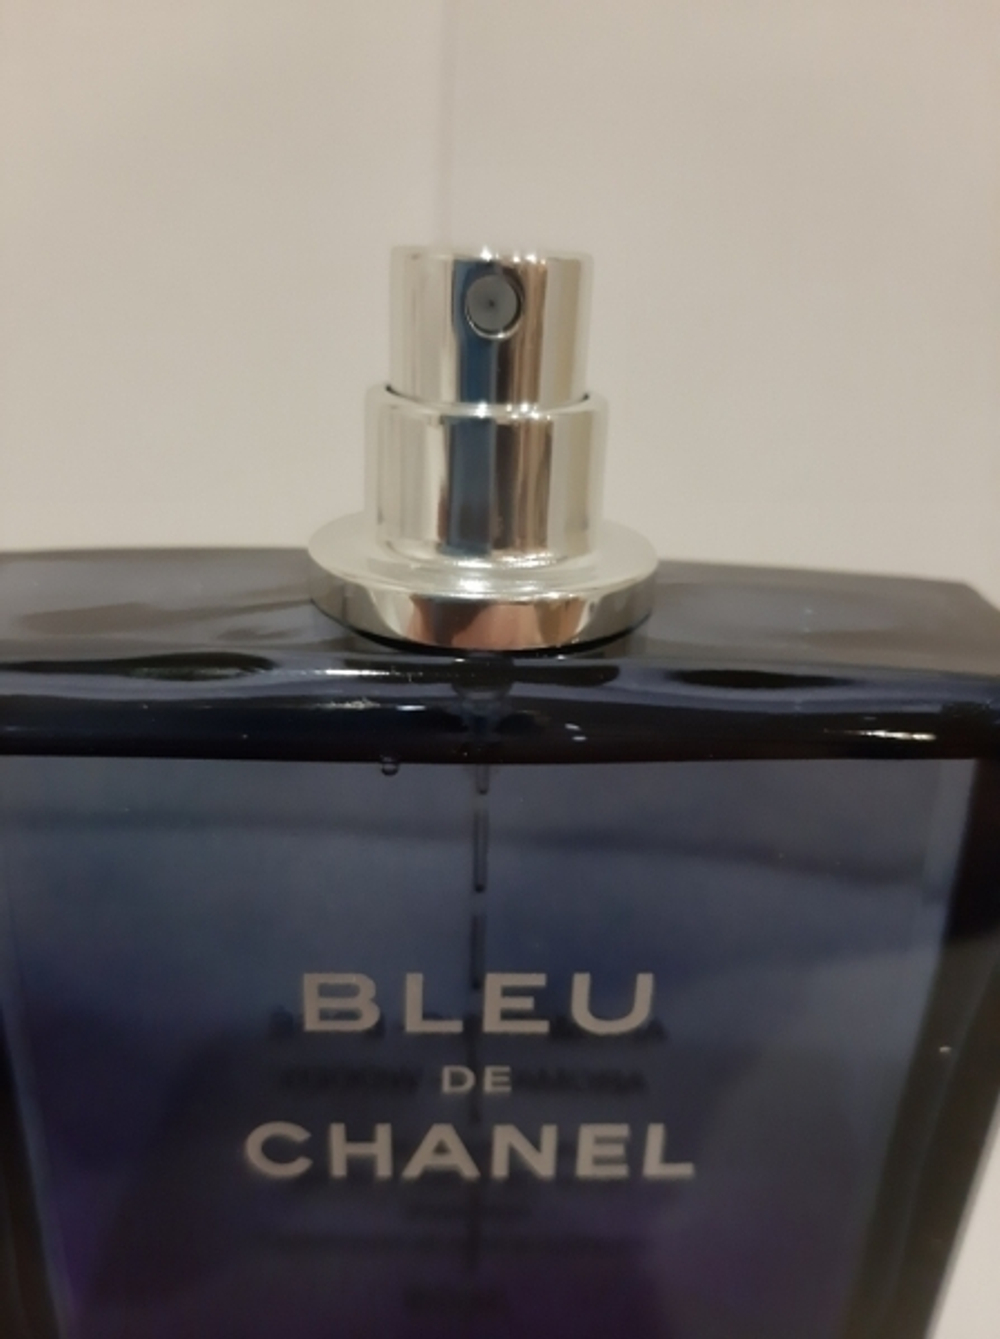 Тестер парфюмерии Chanel Bleu de Chanel EDT 100ml TESTER (duty free парфюмерия)